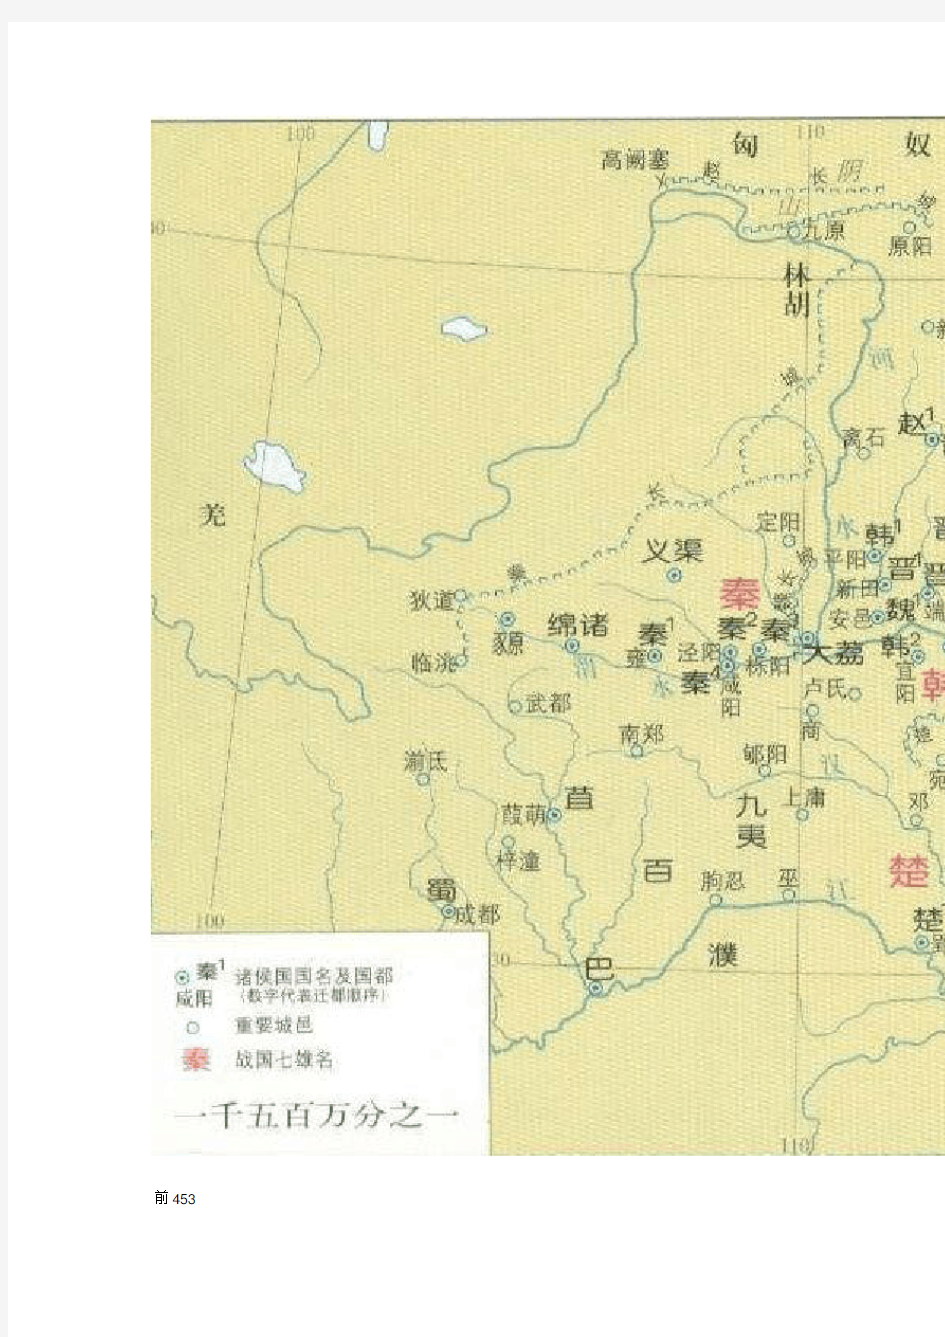 春秋战国详细地图(国时期)